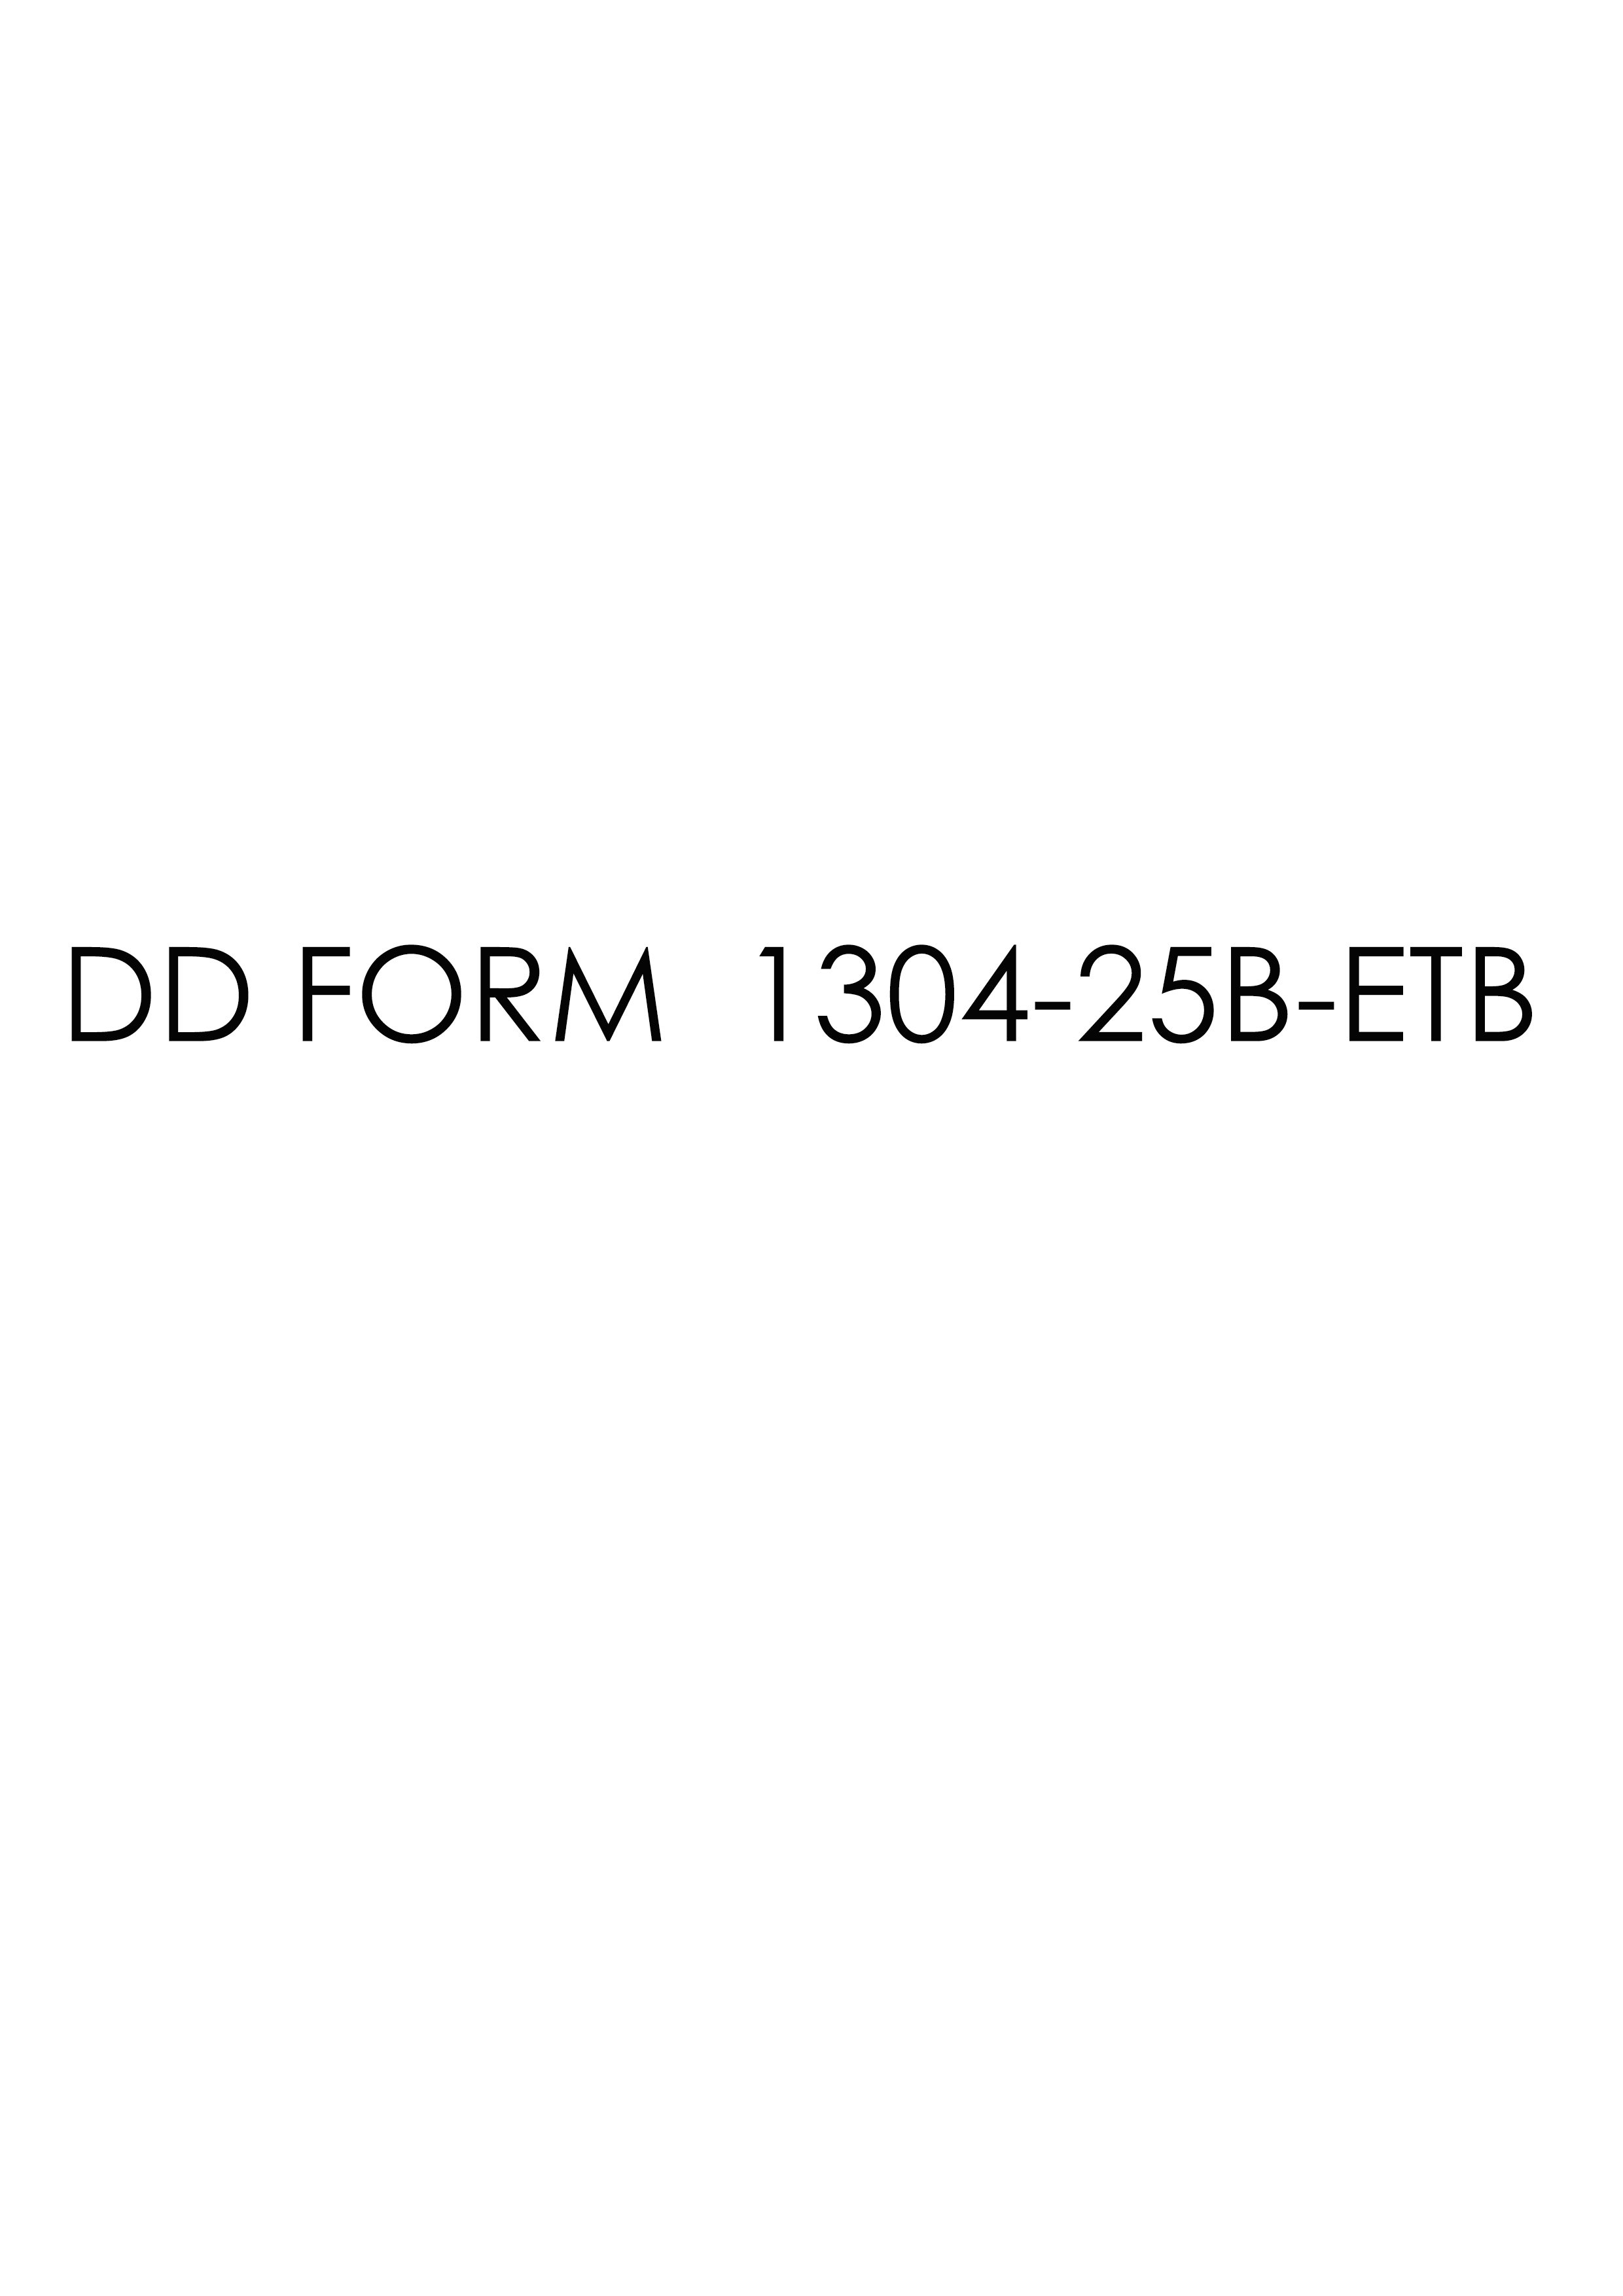 Download dd 1304-25B-ETB Form